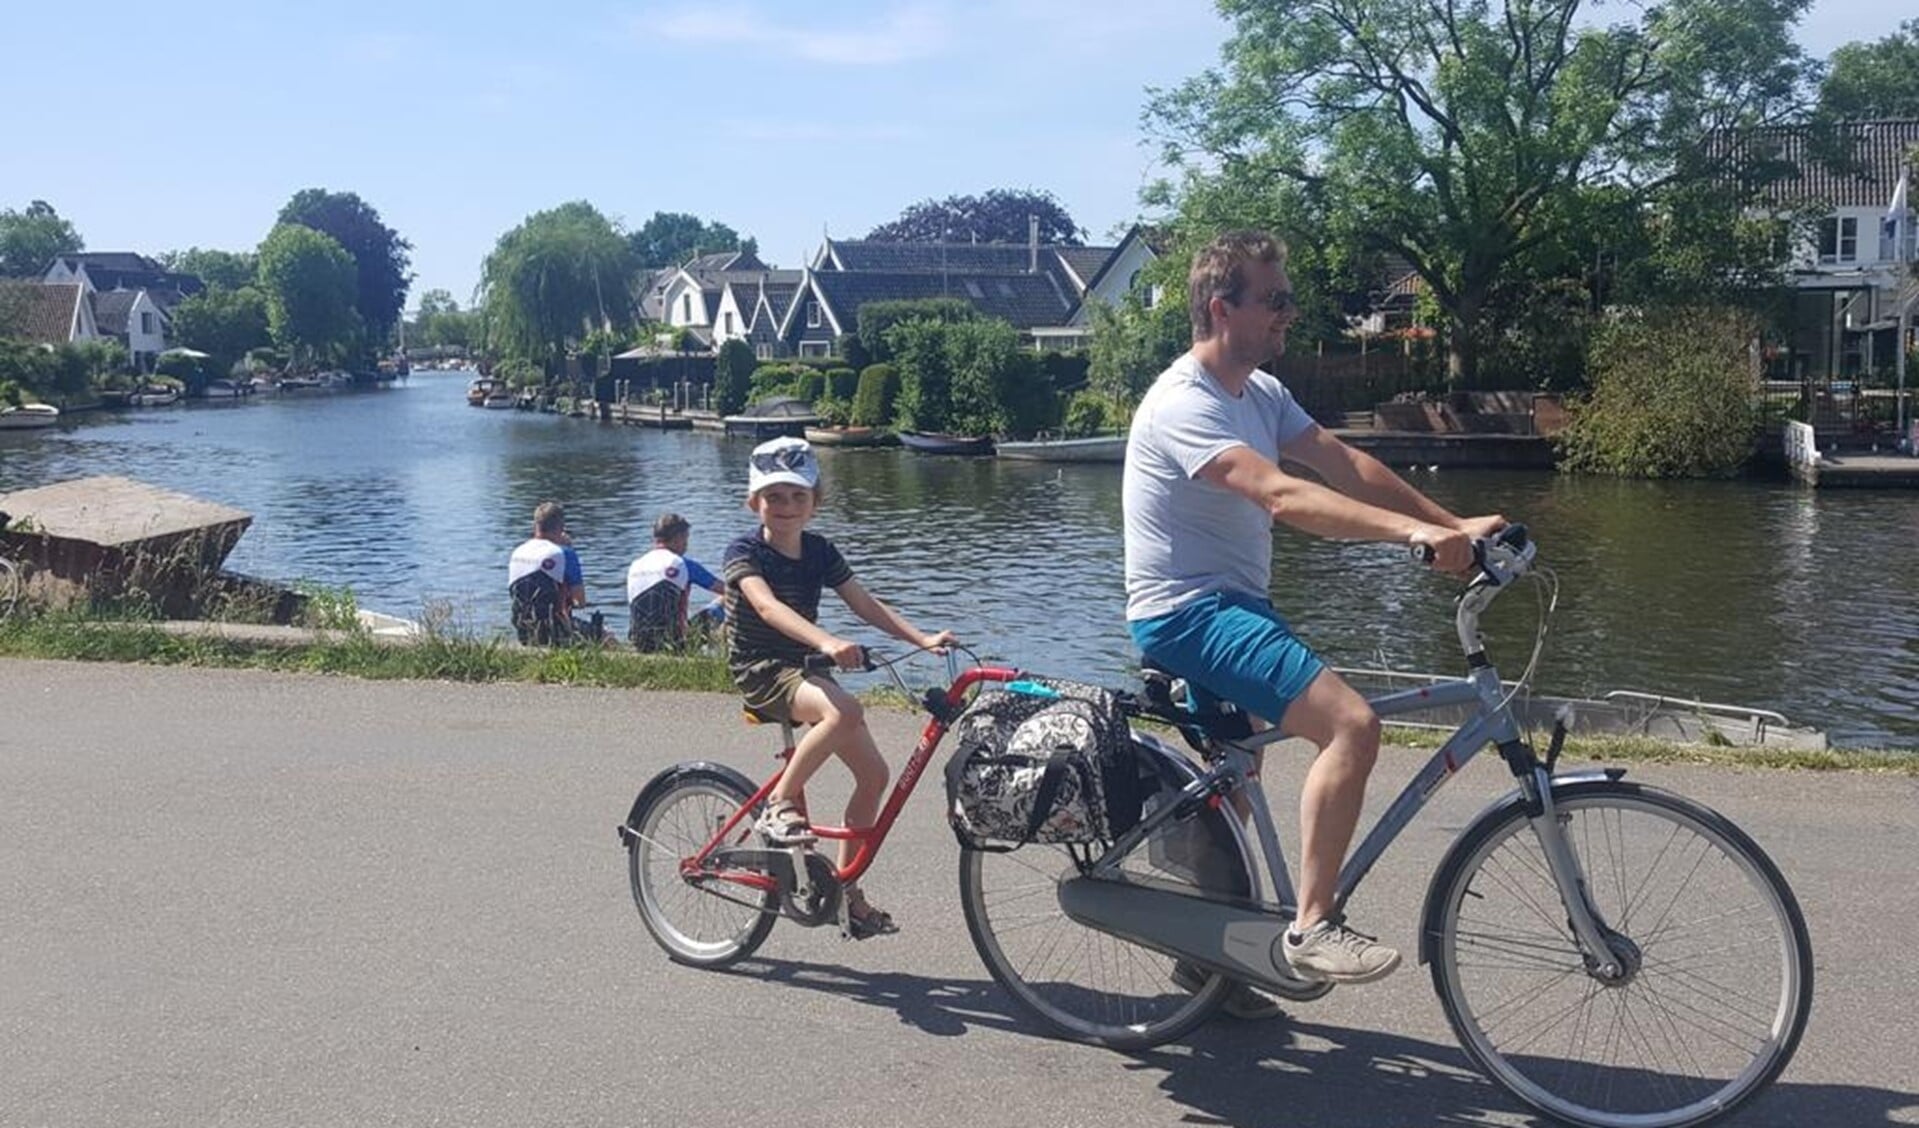 Ontdek het Gooi met je kinderen op de fiets met de routes van Kids on a Bike.